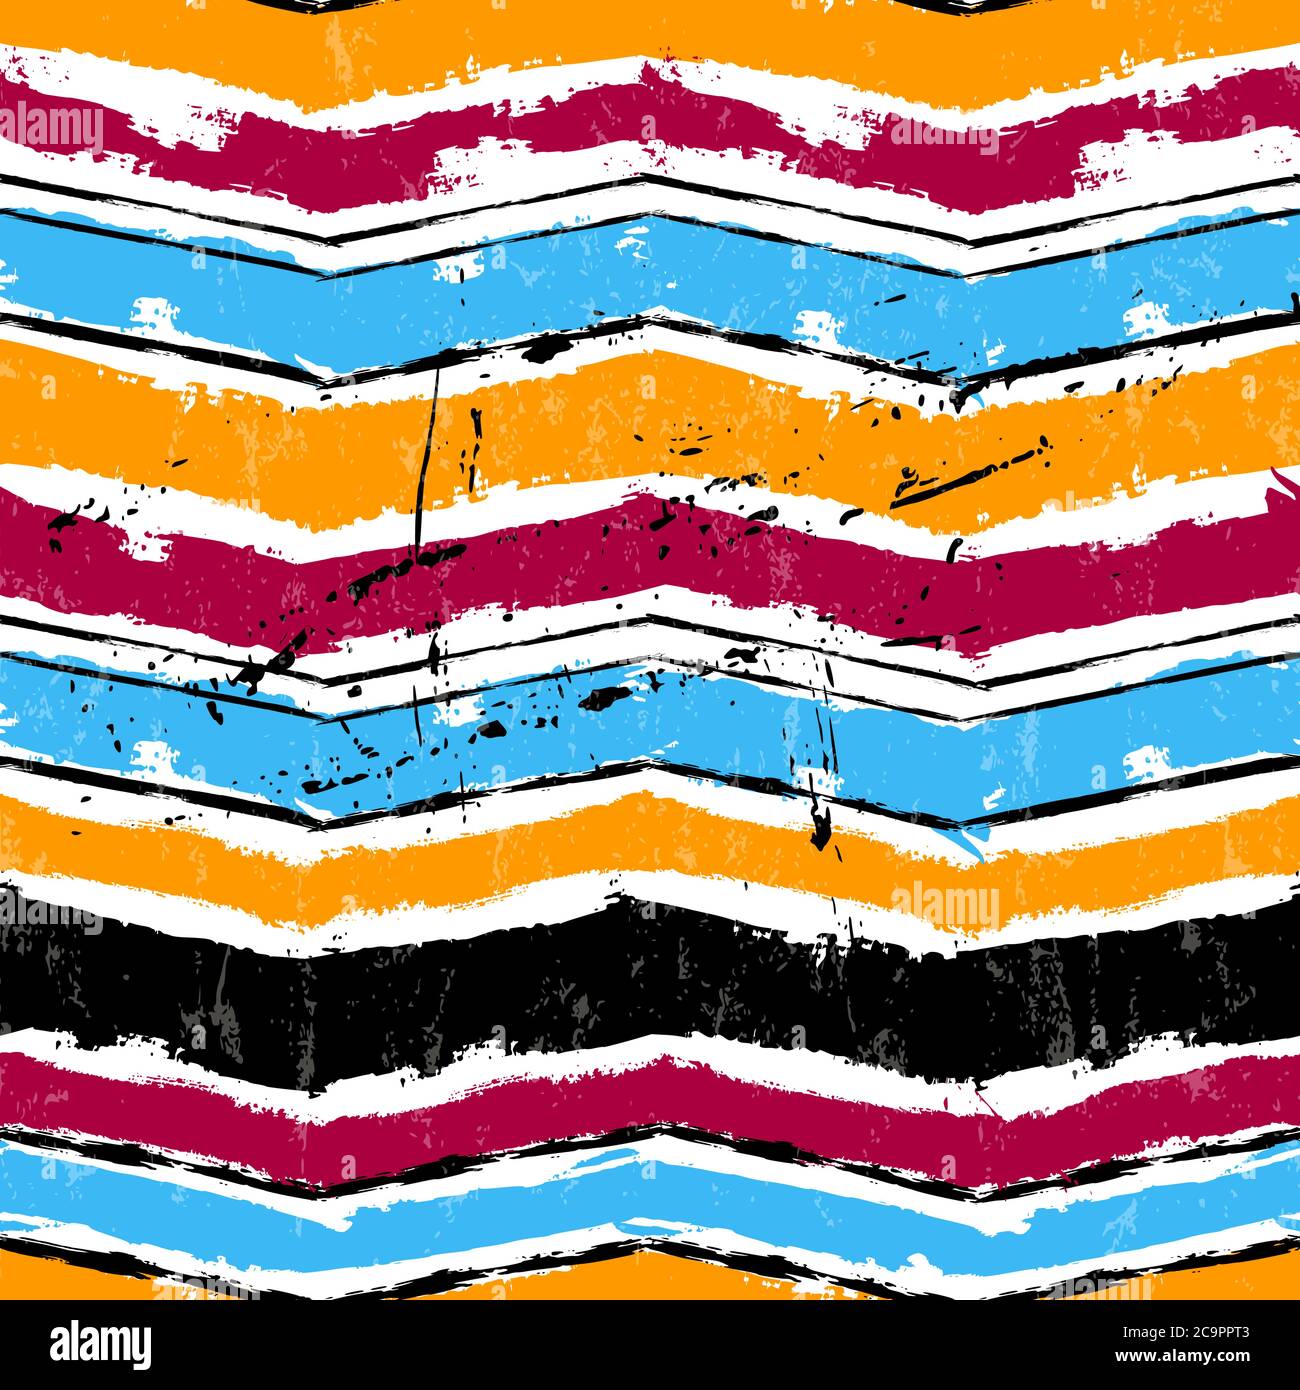 Abstrakter geometrischer Hintergrund mit Malstrichen und Spritzern, Zickzack-Muster, nahtlos Stock Vektor